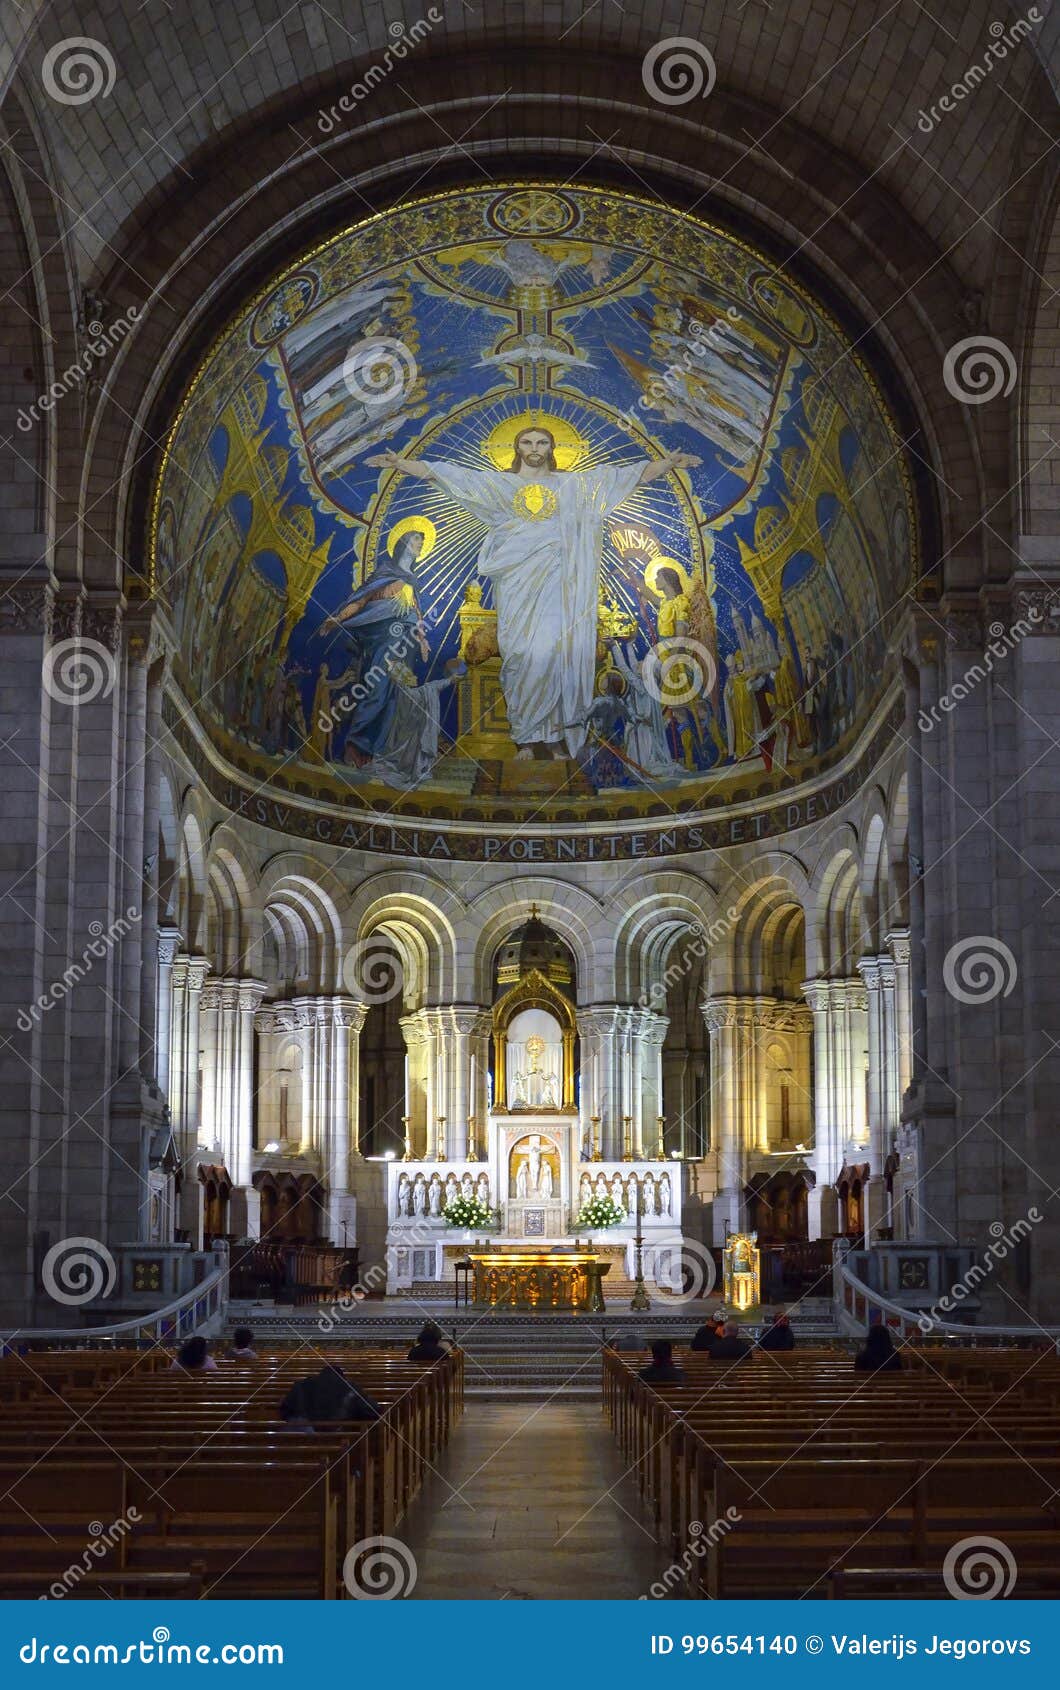 Inside Basilica Du Sacre Coeur Editorial Image Image Of Sacre Interior